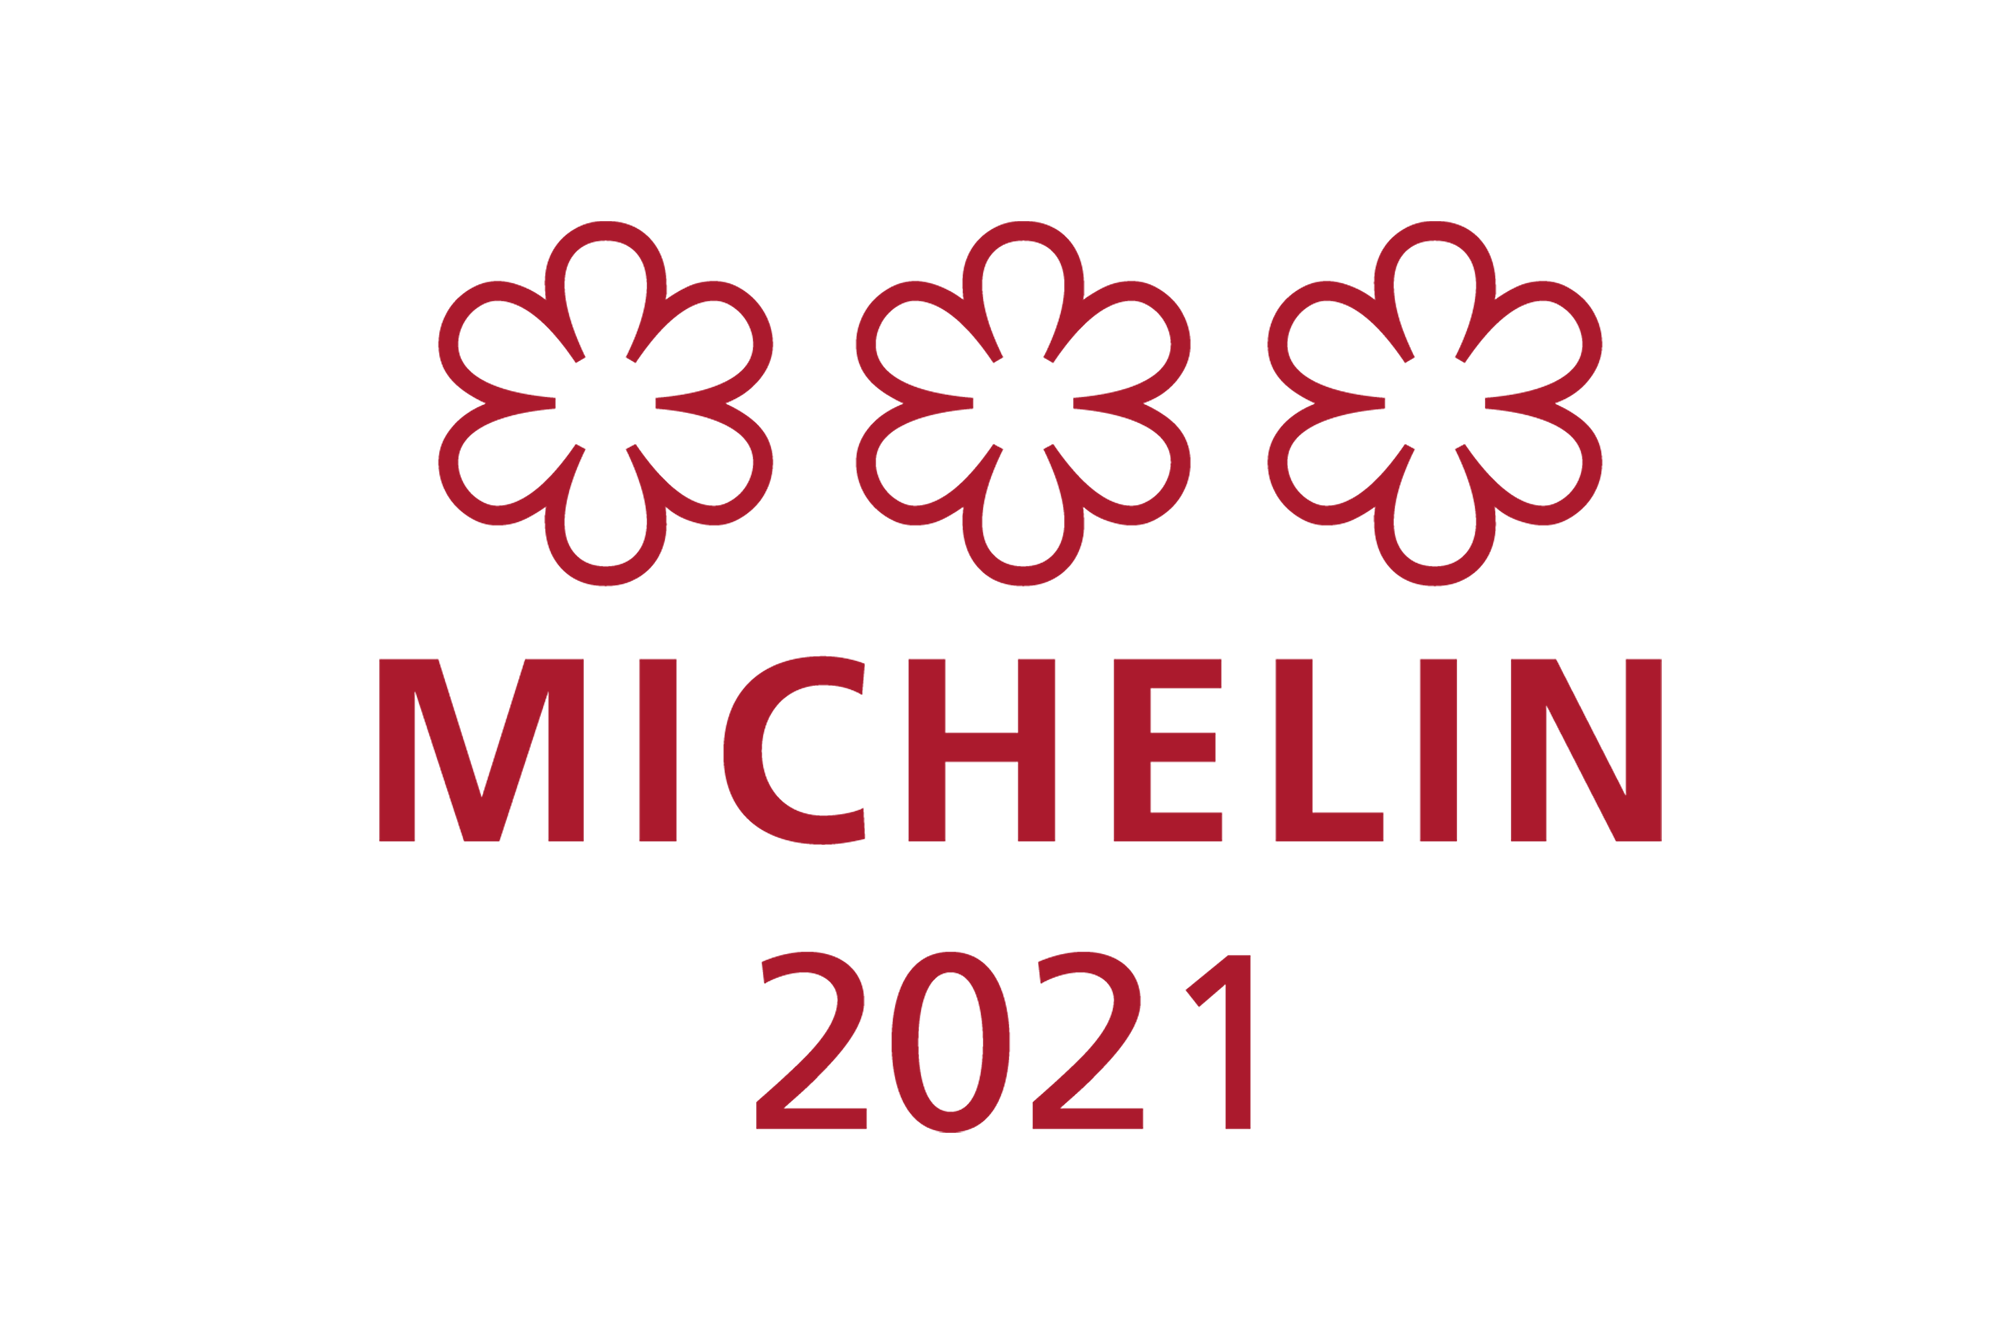 tlhkg-michelin-2021-award.png